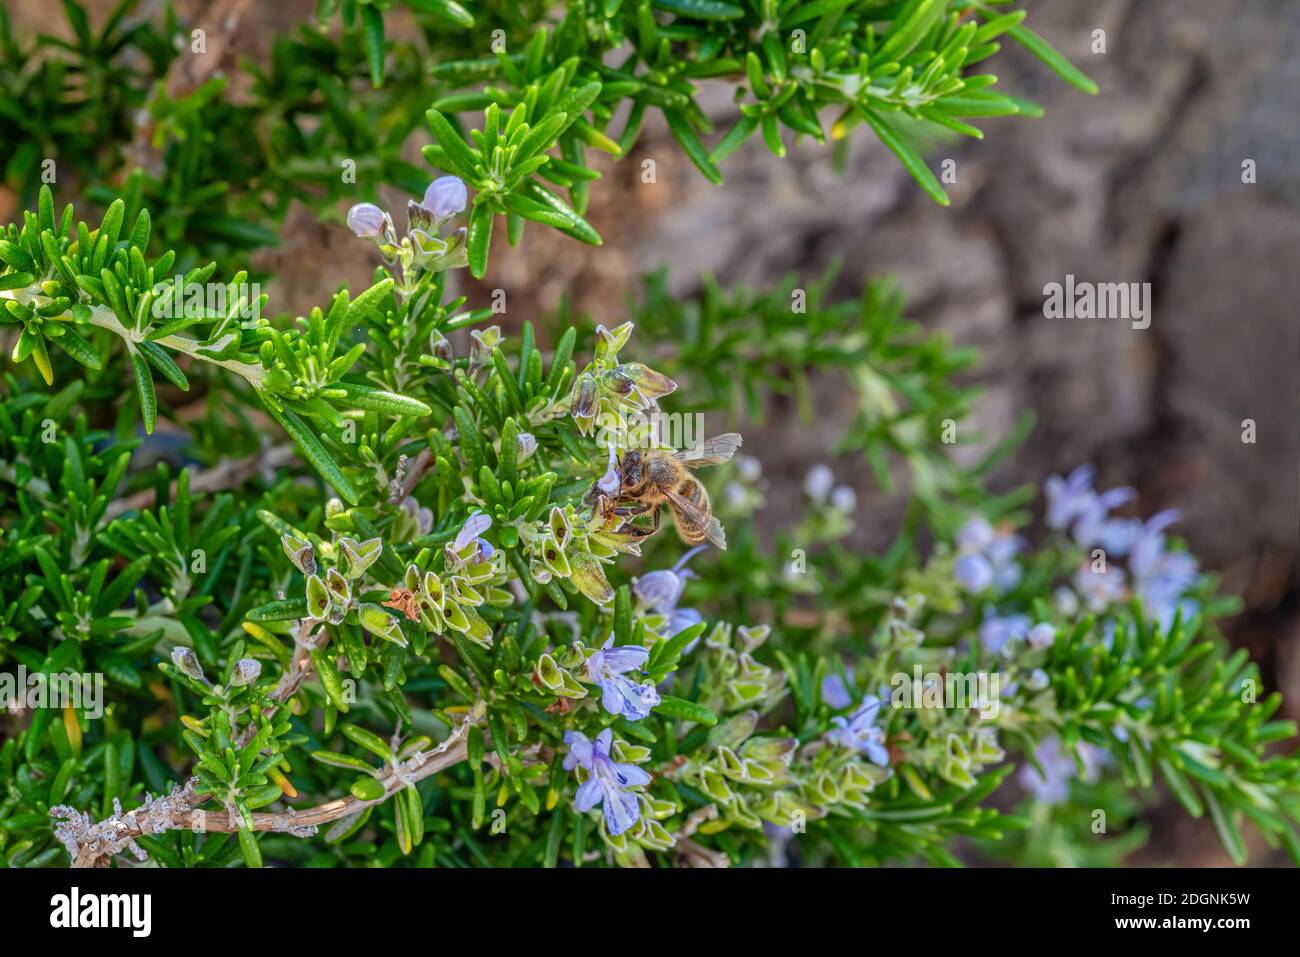 Abeja en una planta de romero Capri con flor closeup, Rosmarinus Officinalis 'Prostratus' Foto de stock